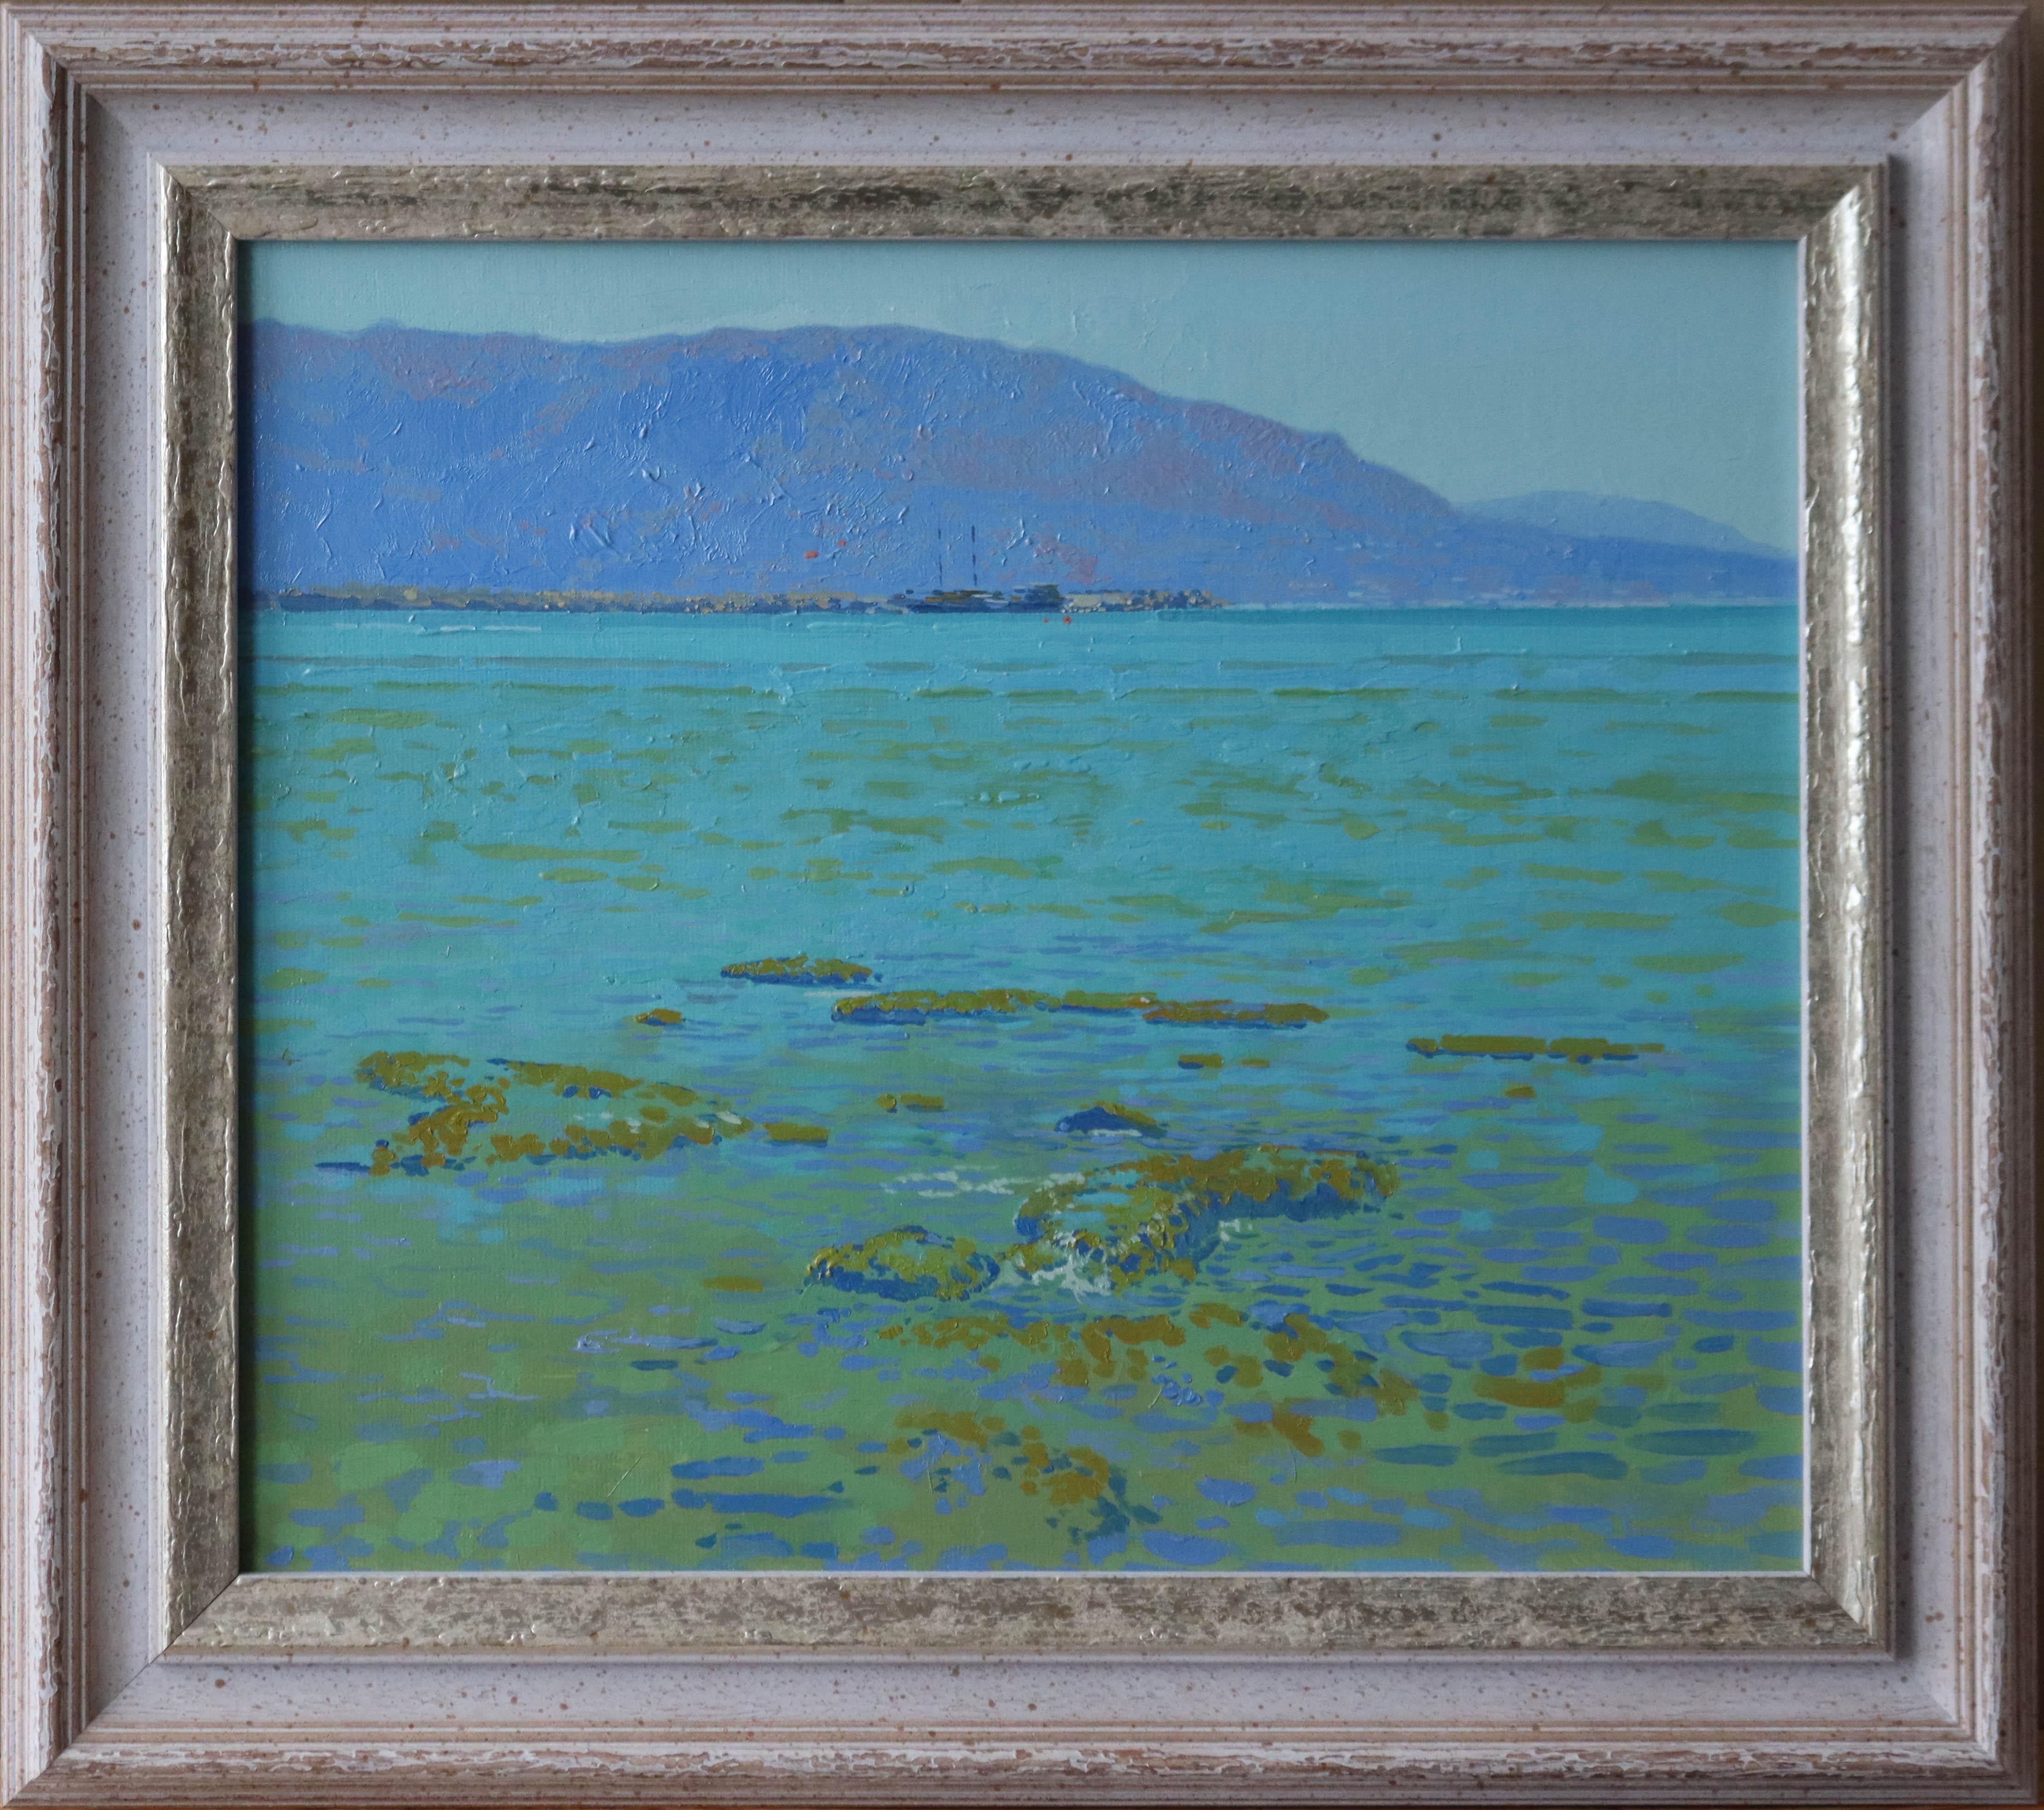 Malia Bay at Noon - Painting by Simon Kozhin